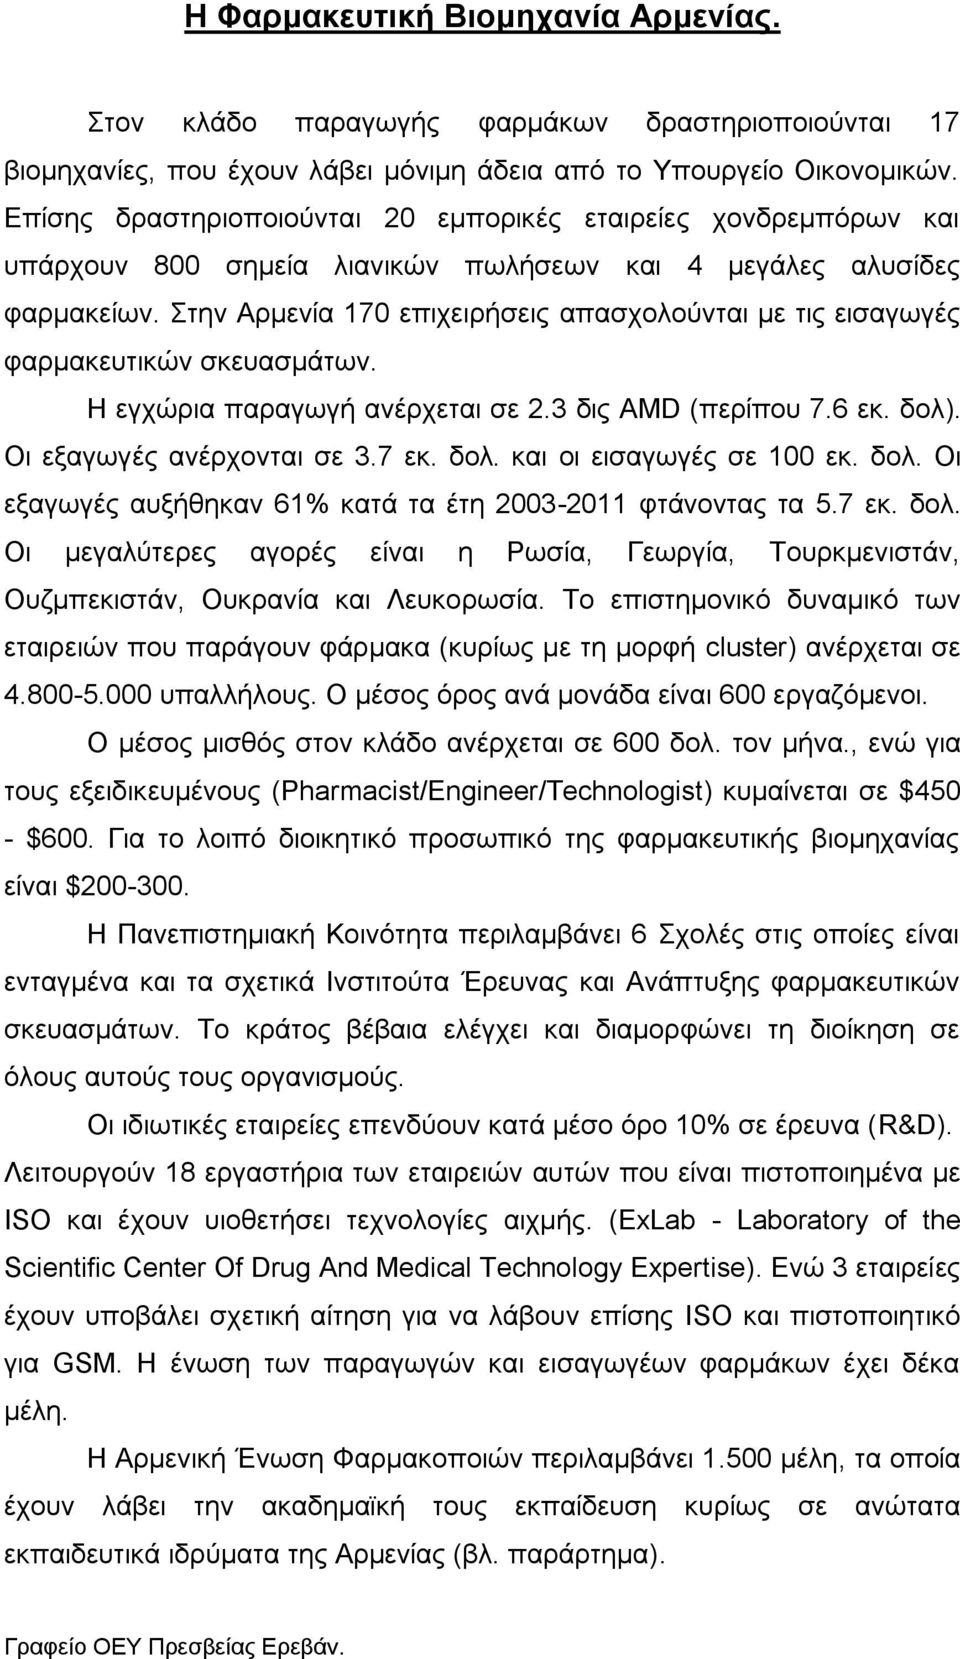 Στην Αρμενία 170 επιχειρήσεις απασχολούνται με τις εισαγωγές φαρμακευτικών σκευασμάτων. Η εγχώρια παραγωγή ανέρχεται σε 2.3 δις AMD (περίπου 7.6 εκ. δολ). Οι εξαγωγές ανέρχονται σε 3.7 εκ. δολ. και οι εισαγωγές σε 100 εκ.